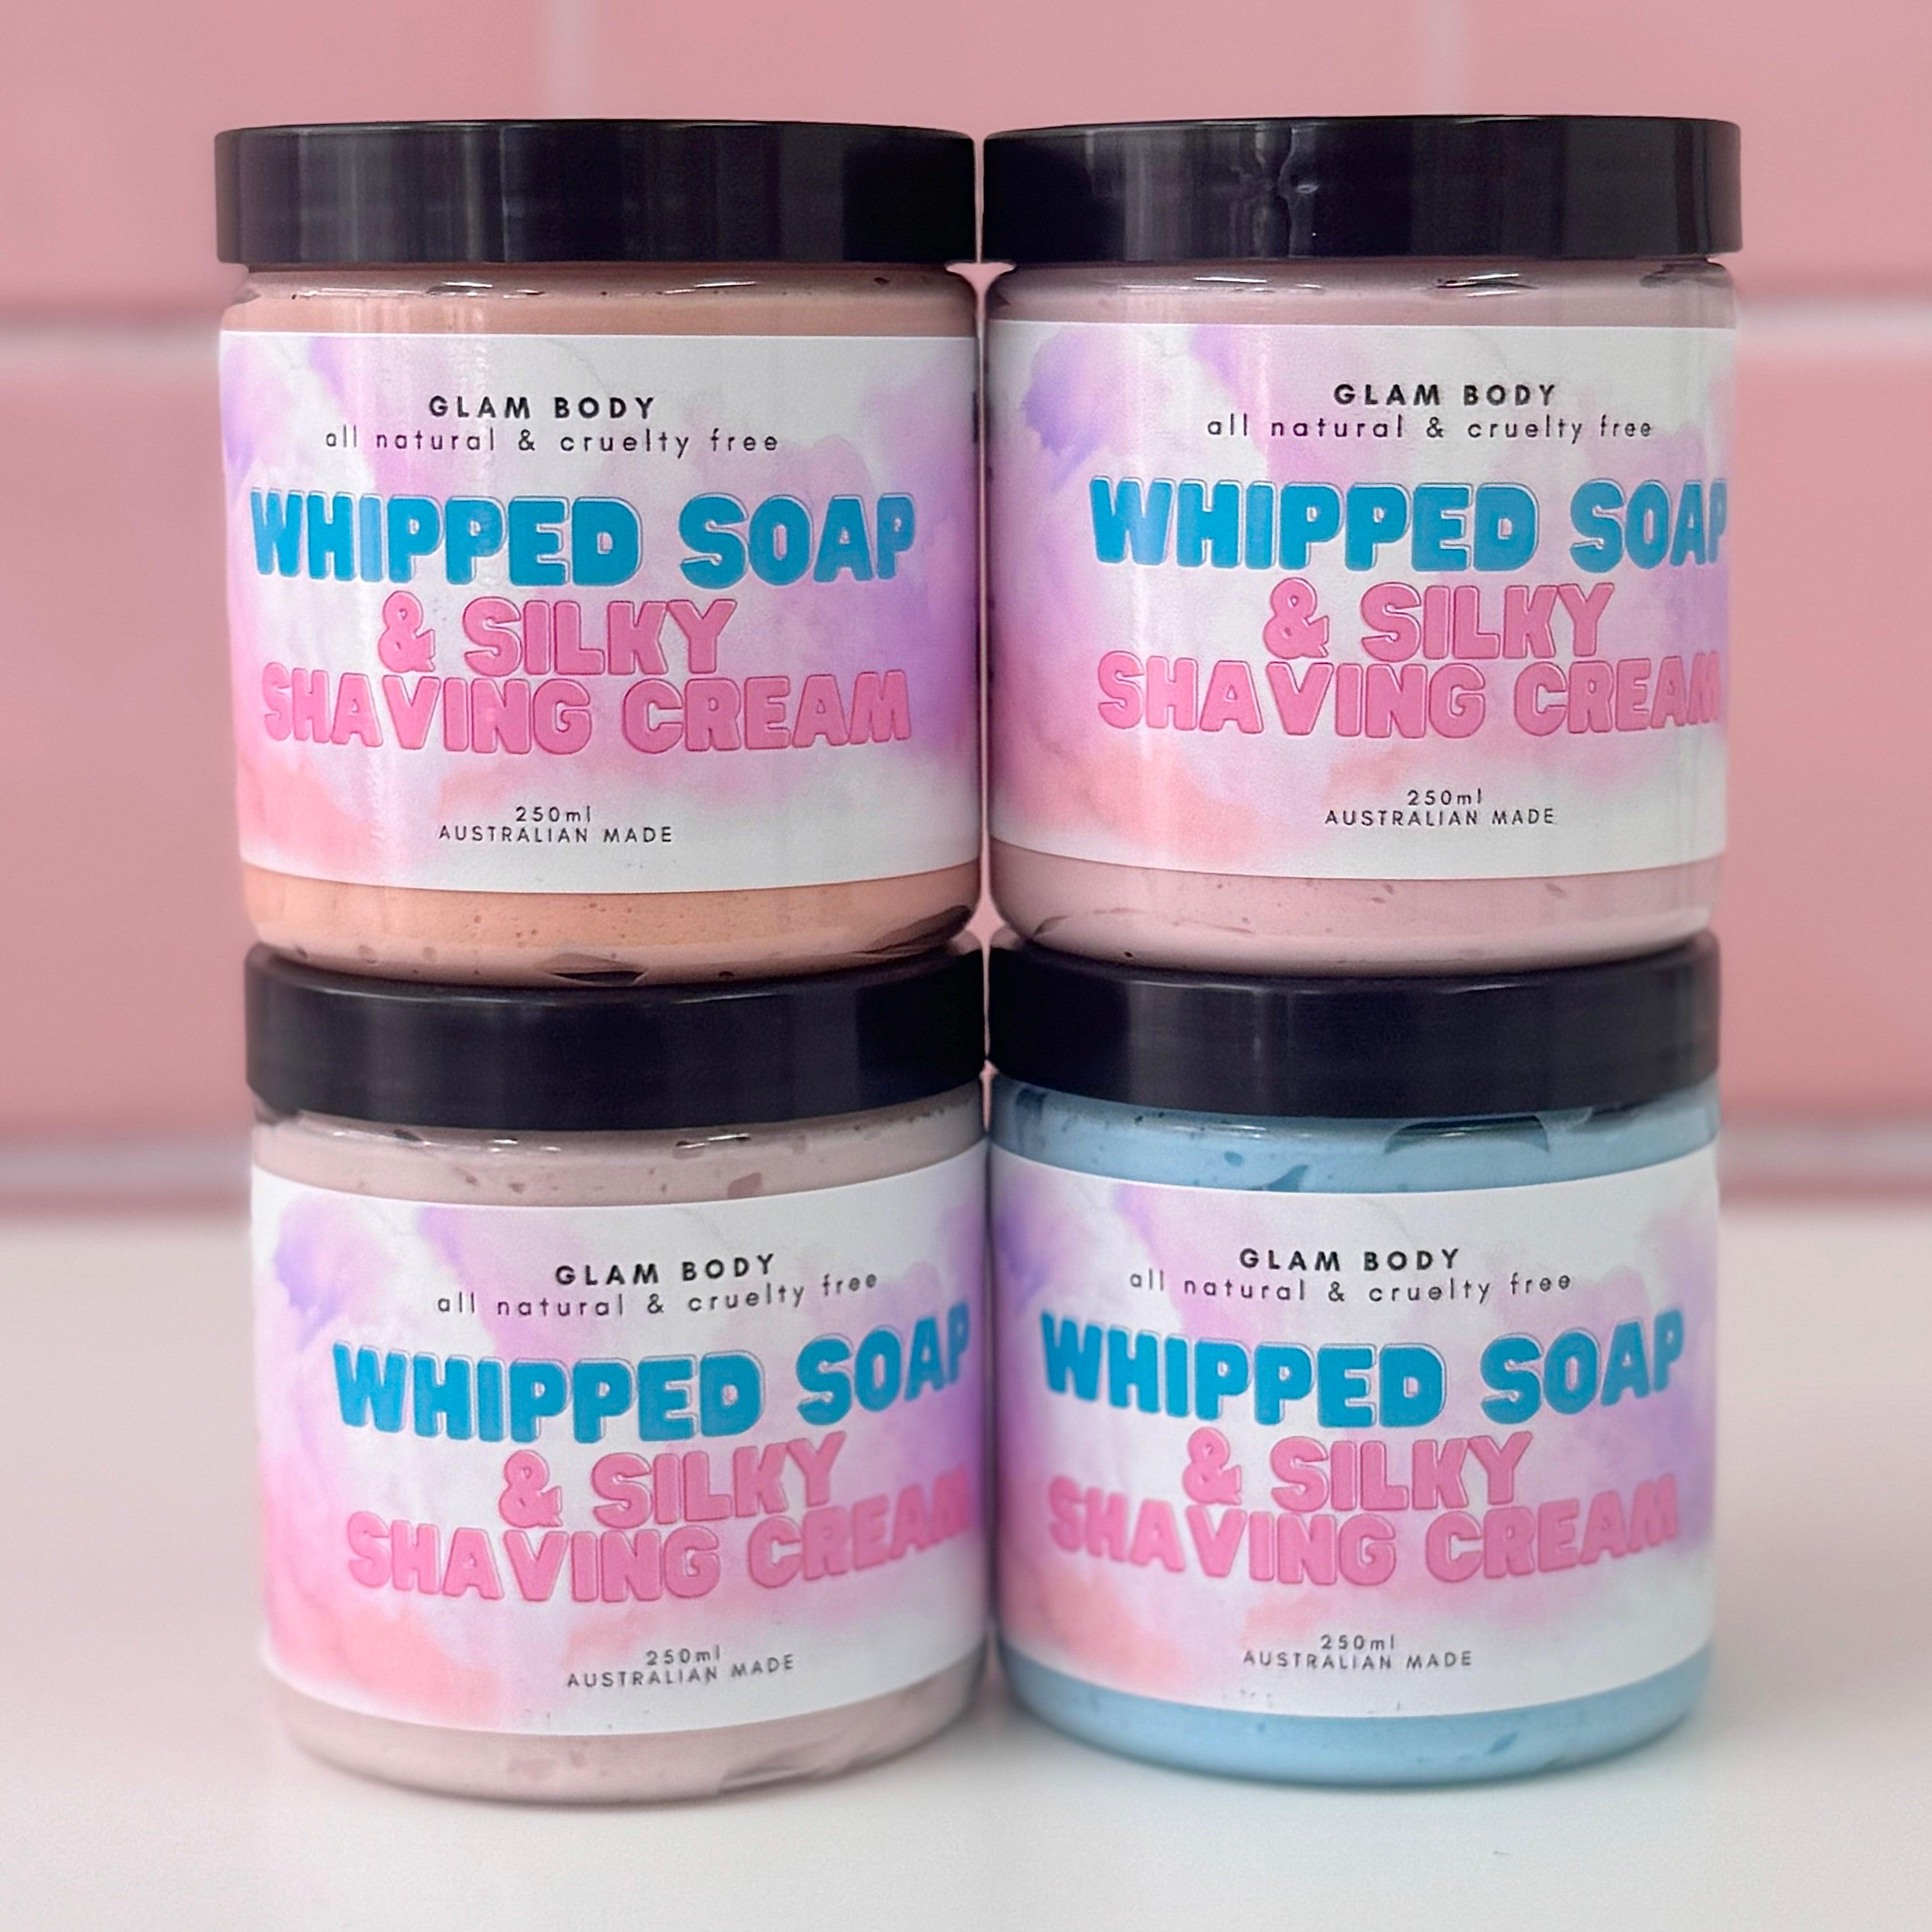 SOFT WHIPPED SOAP & SILKY SHAVING CREAM - Glam Body